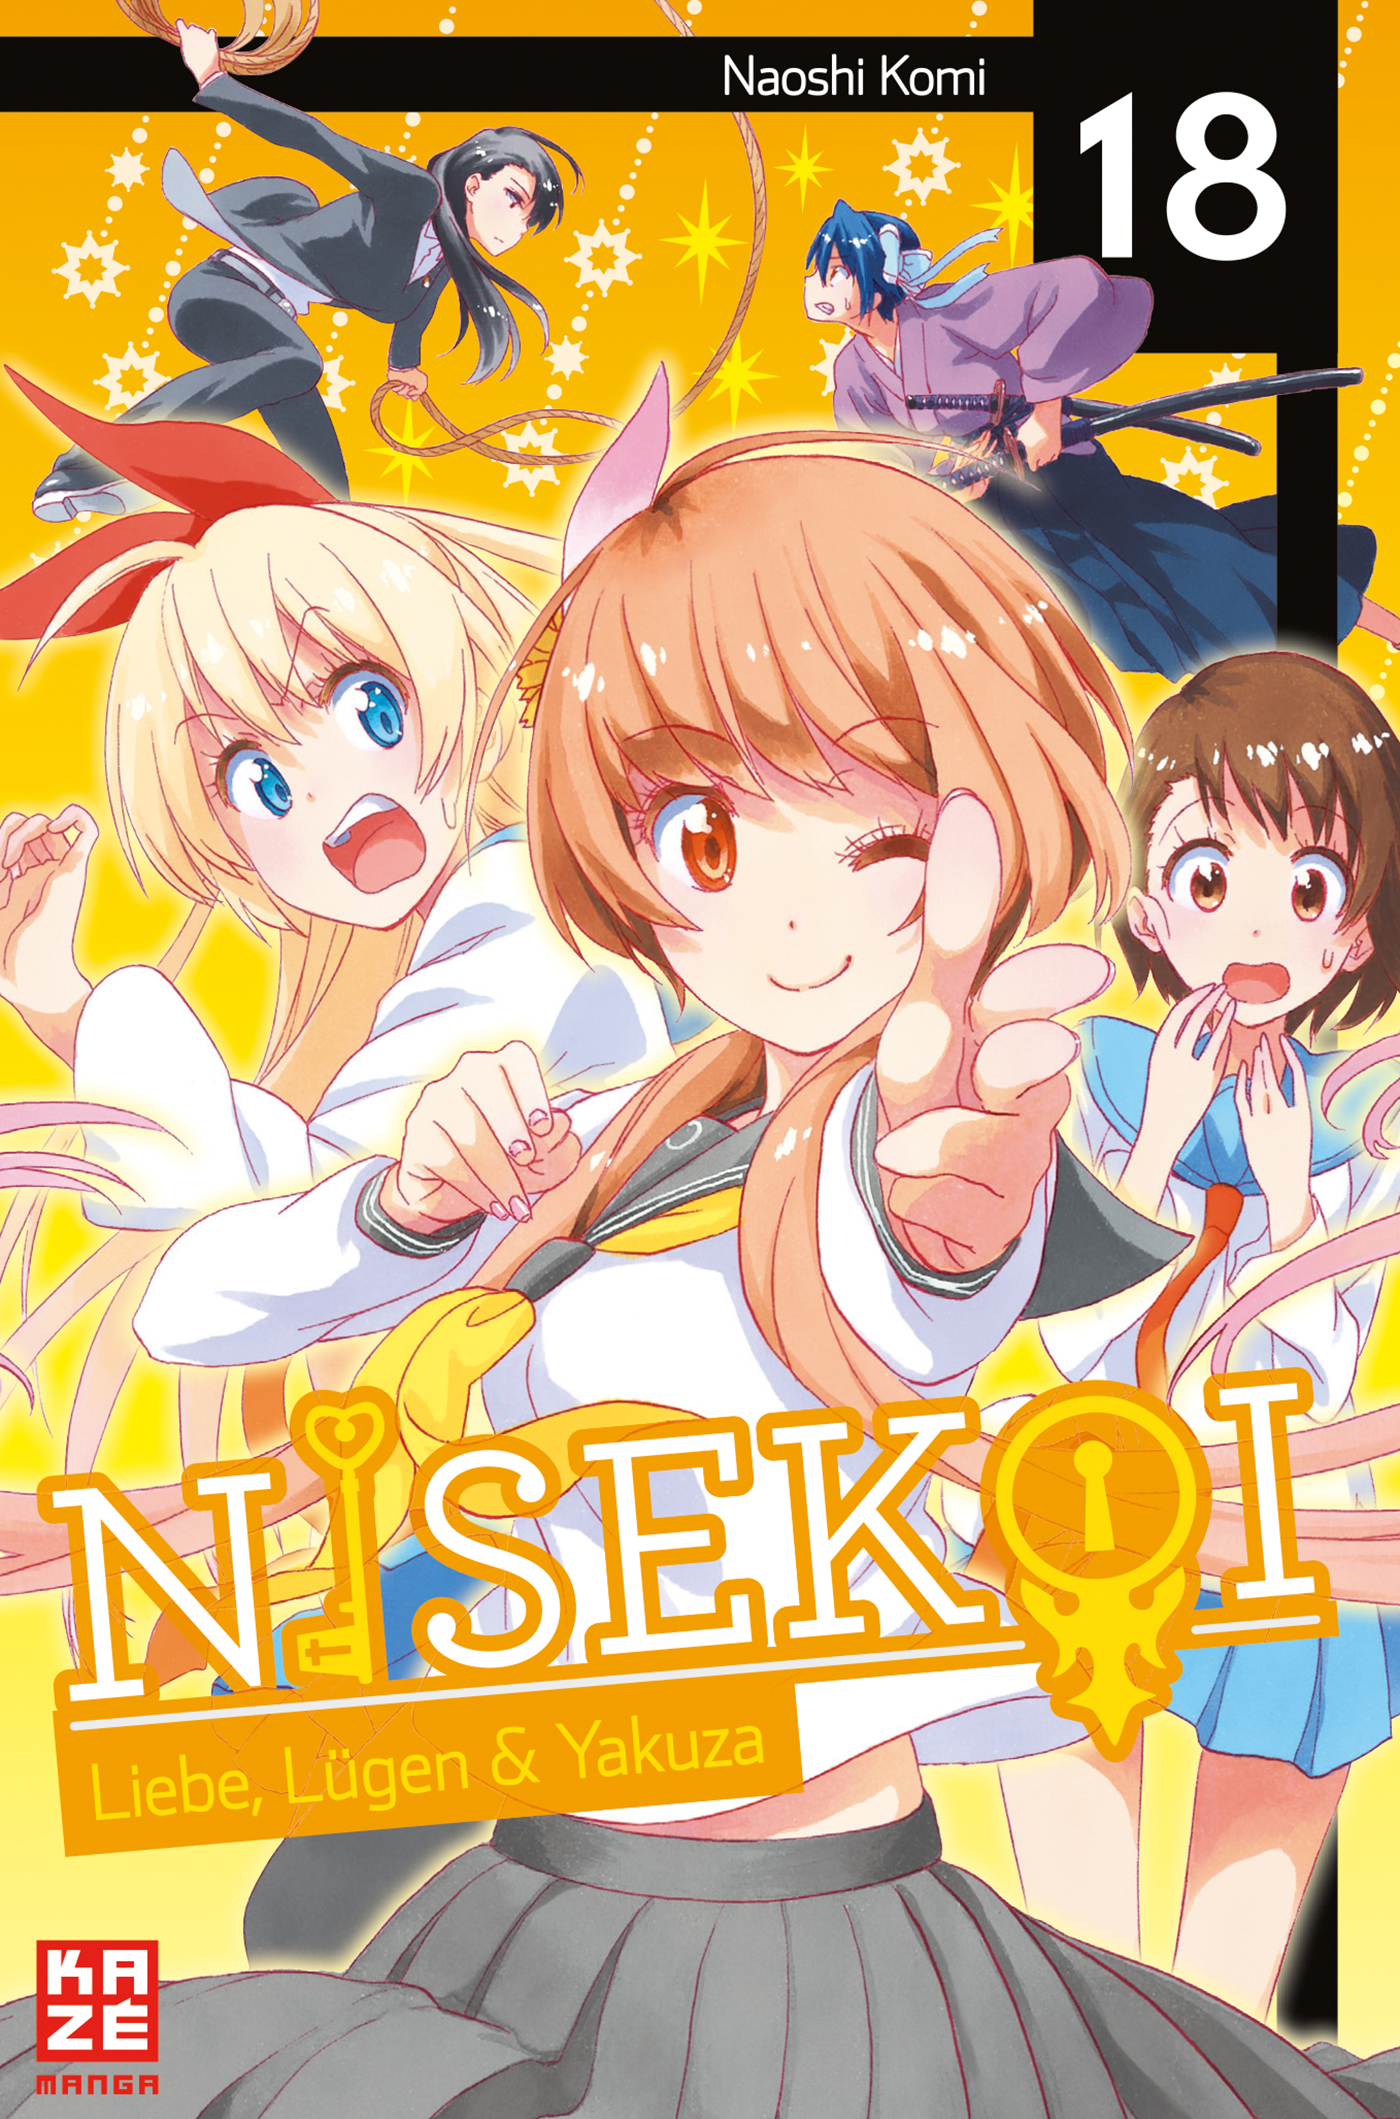 Nisekoi – 18 Band